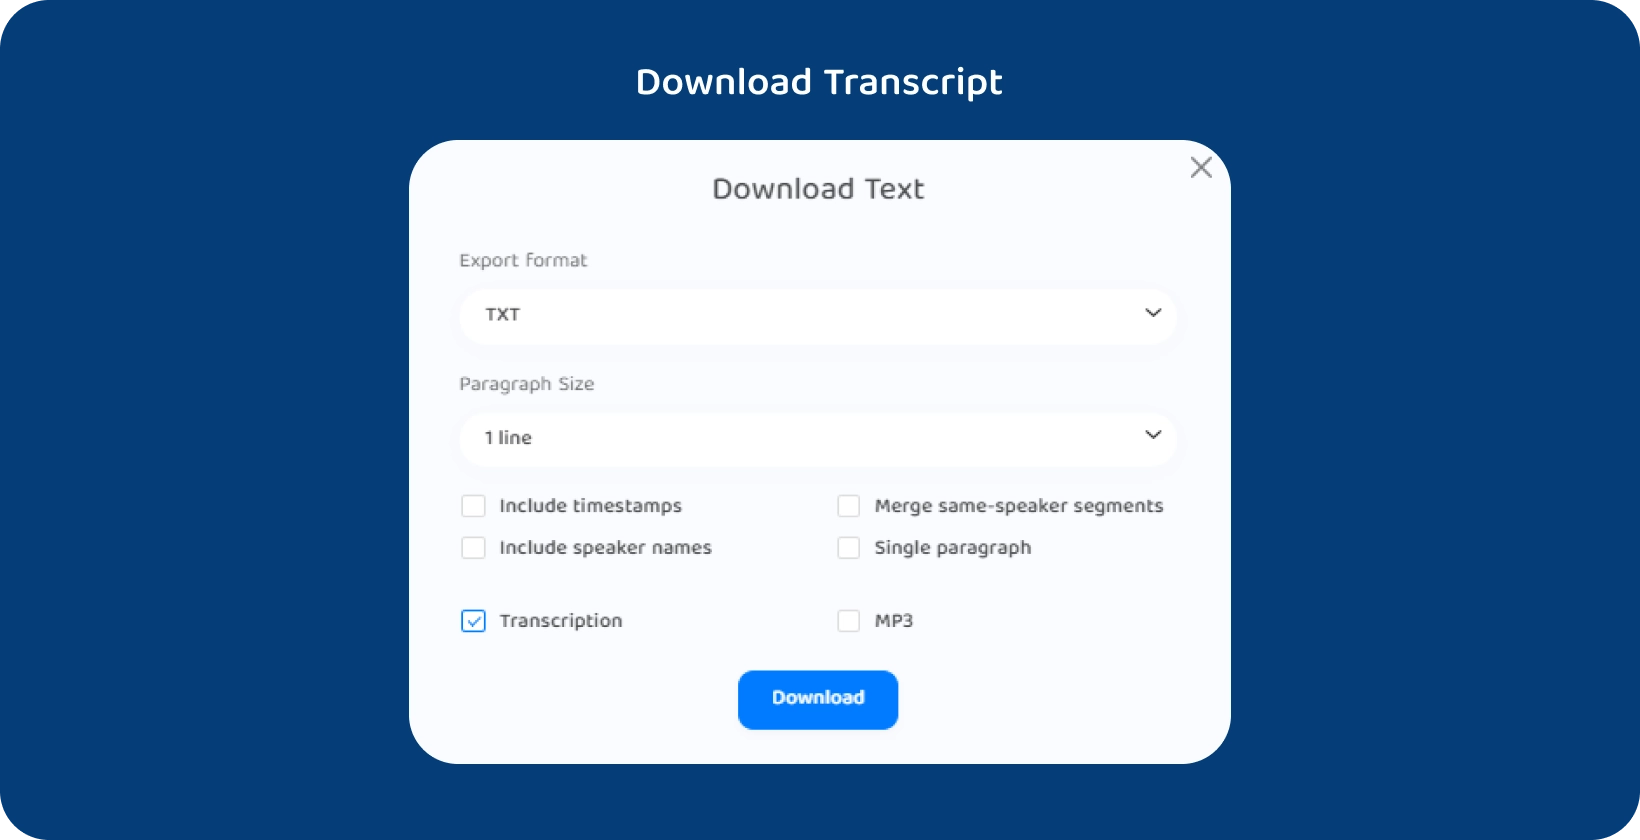 Interfaccia Transkriptor che mostra le opzioni per scaricare il testo di una lezione trascritta.